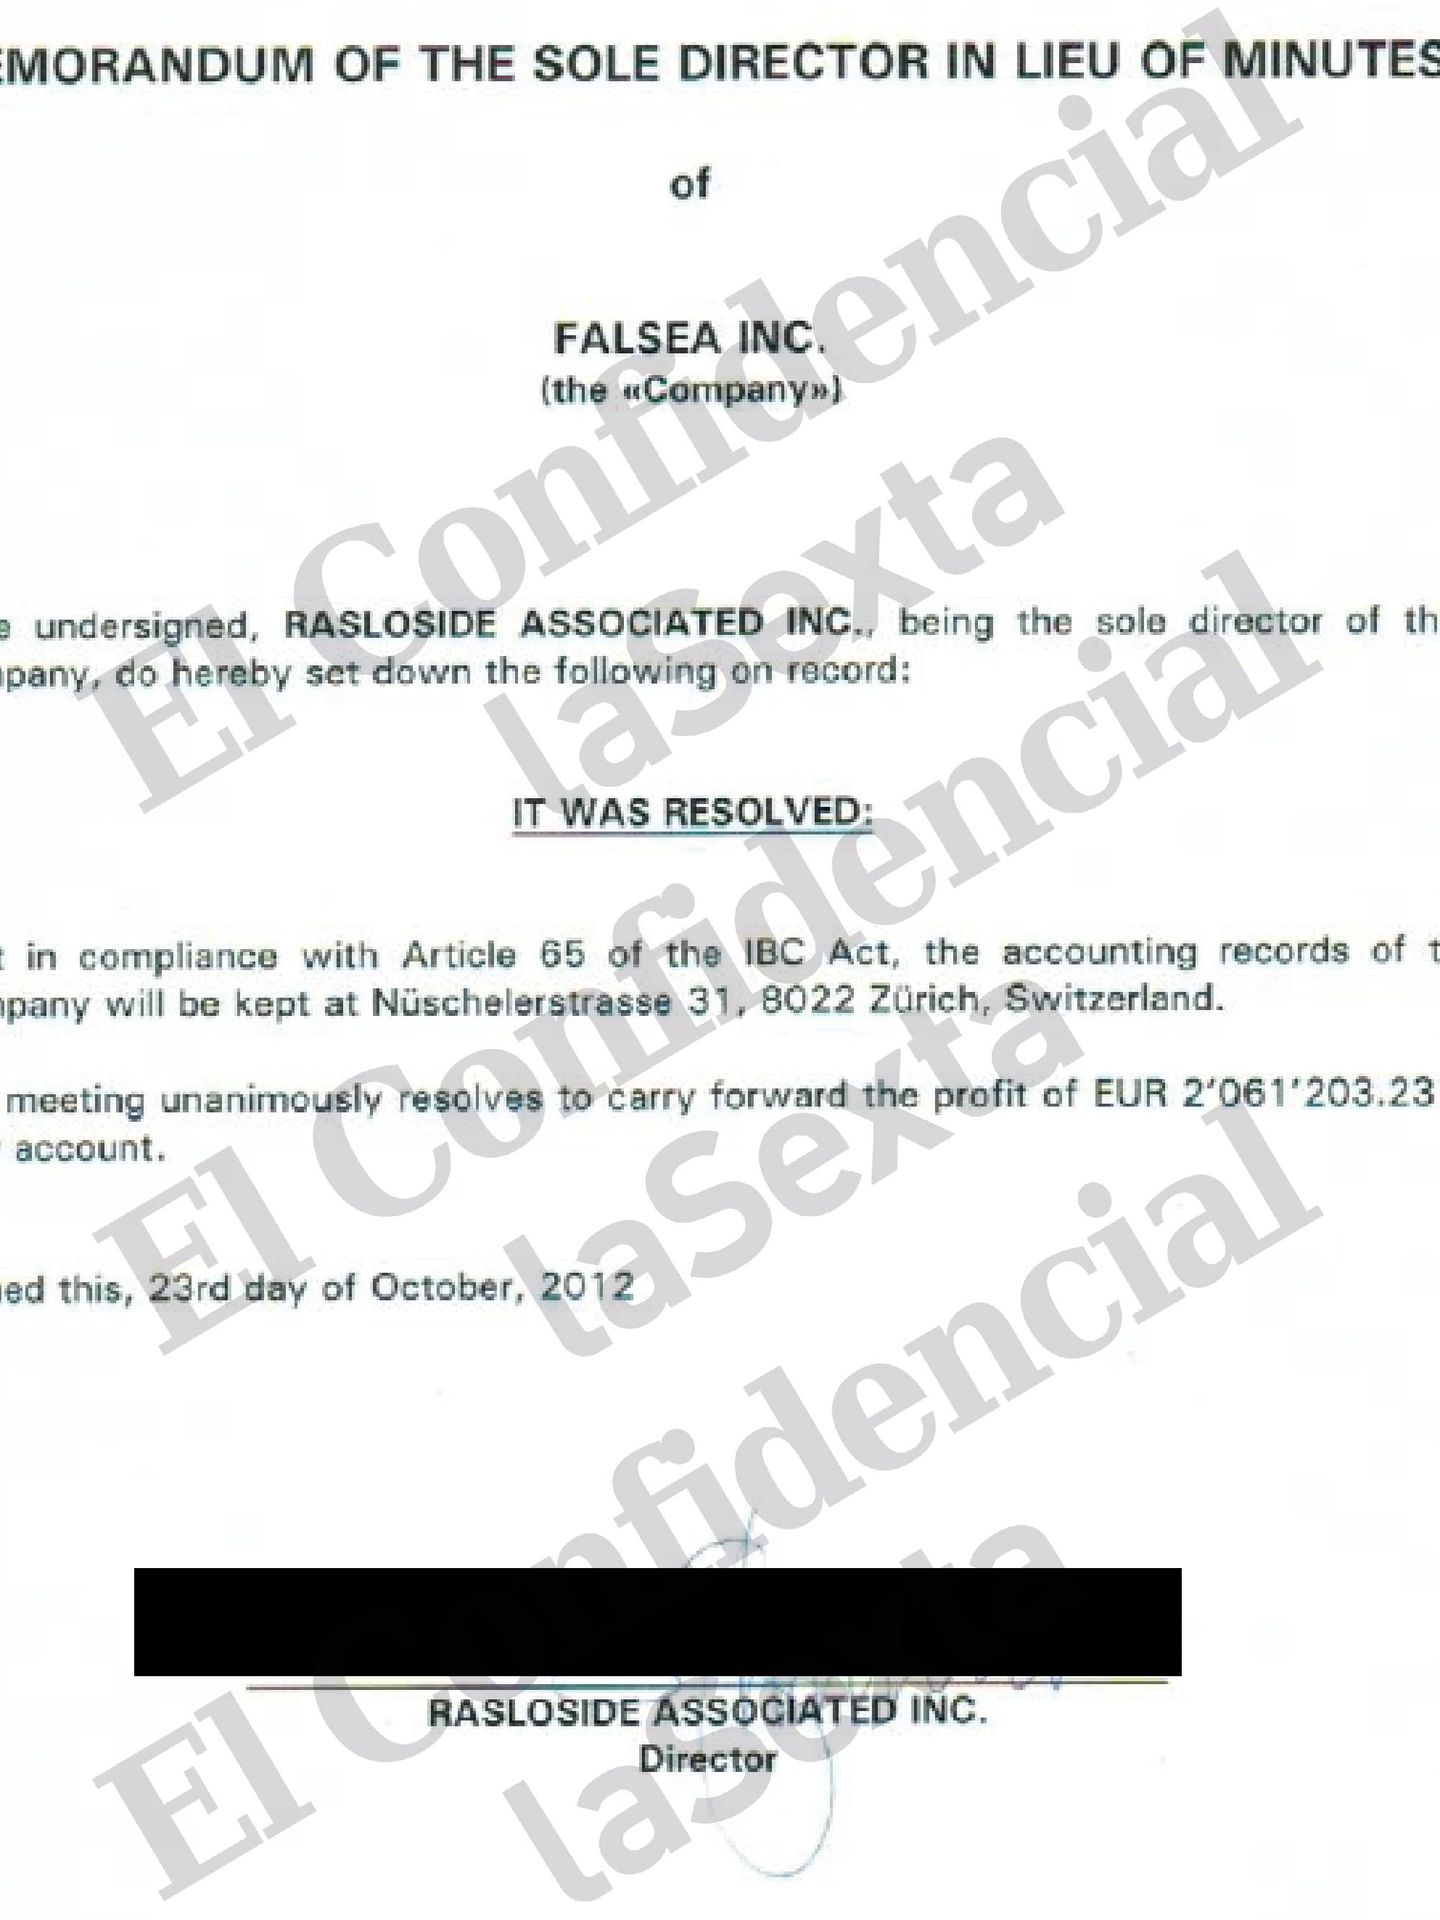 Acta de la junta directiva de Falsea Inc. del 23 de octubre de 2012.